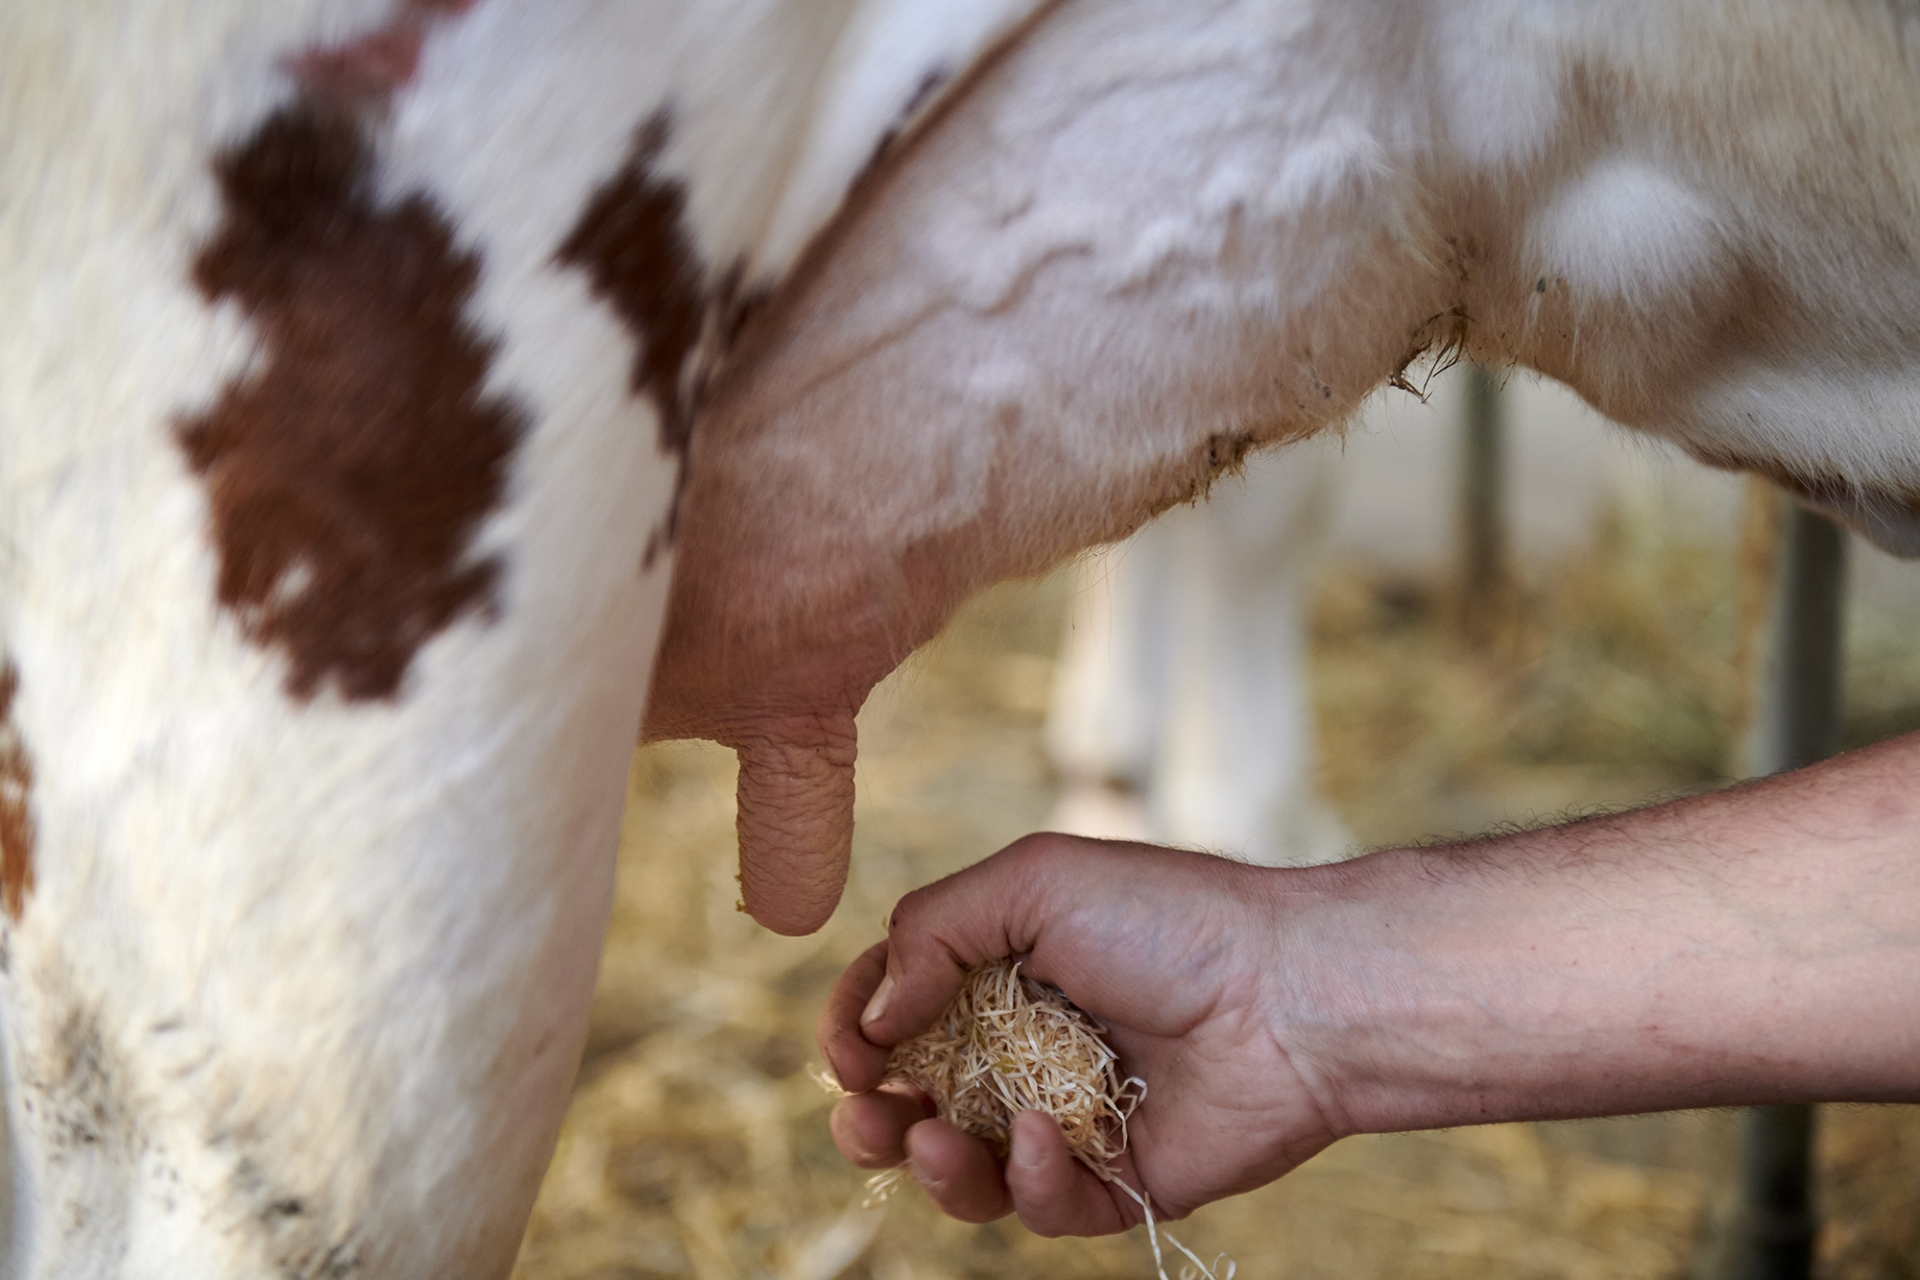 Comment prévenir le risque de contamination du lait en STEC dans un élevage ?